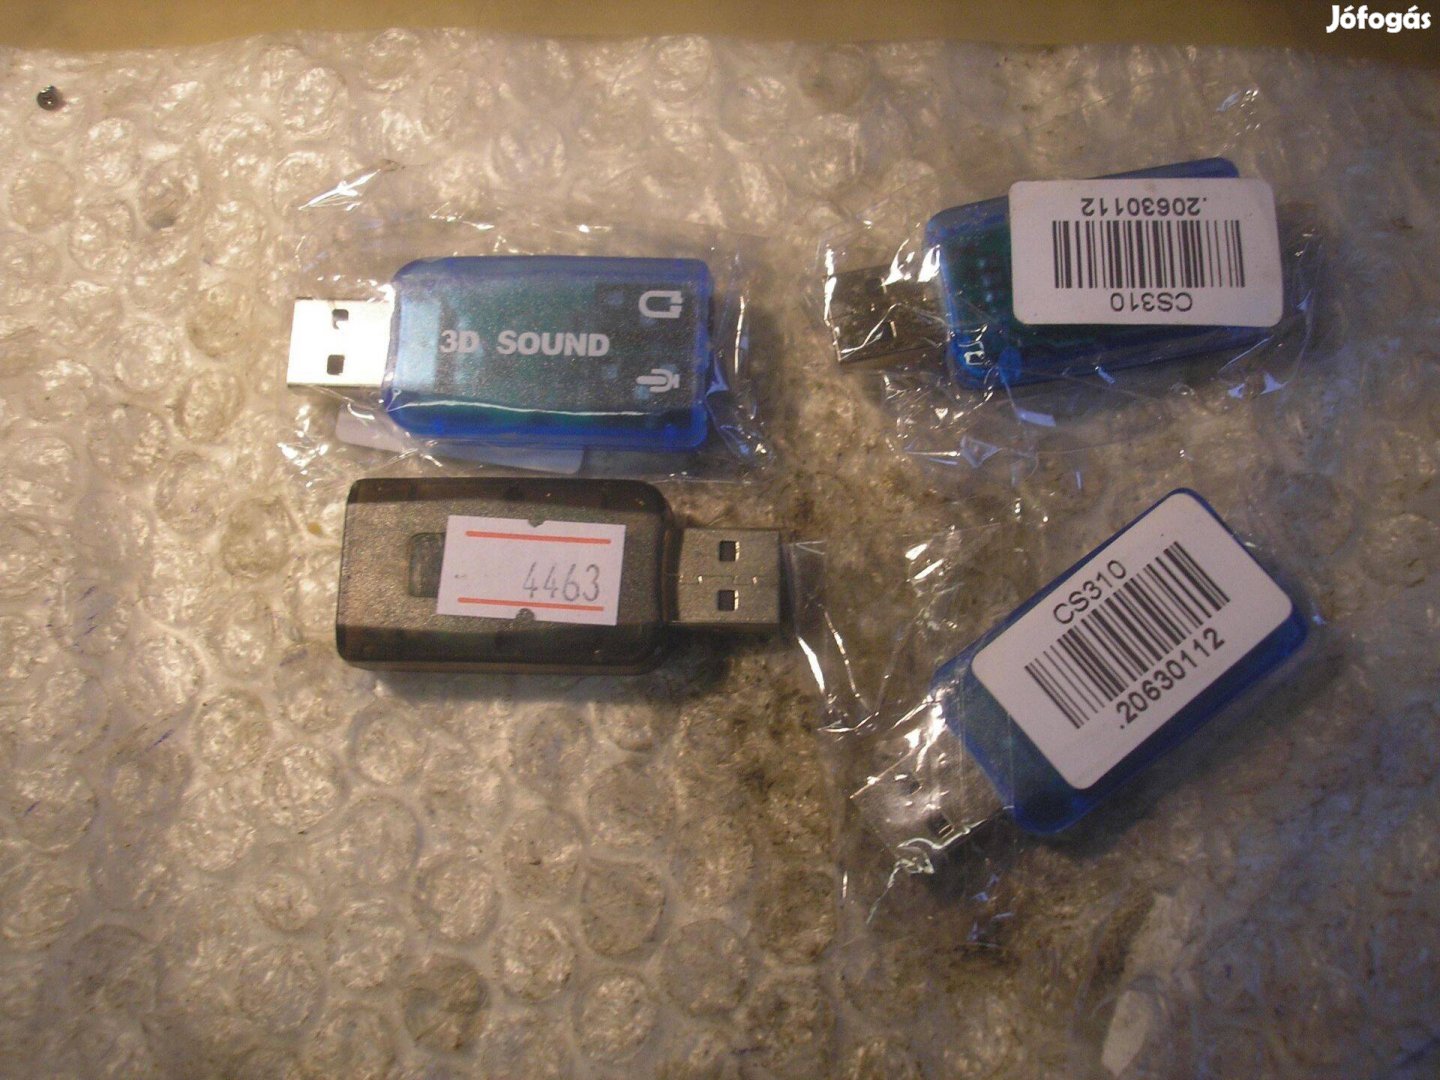 4463 USB hangkártya 2.1 winxp WIN7 WIN8.1 Win10